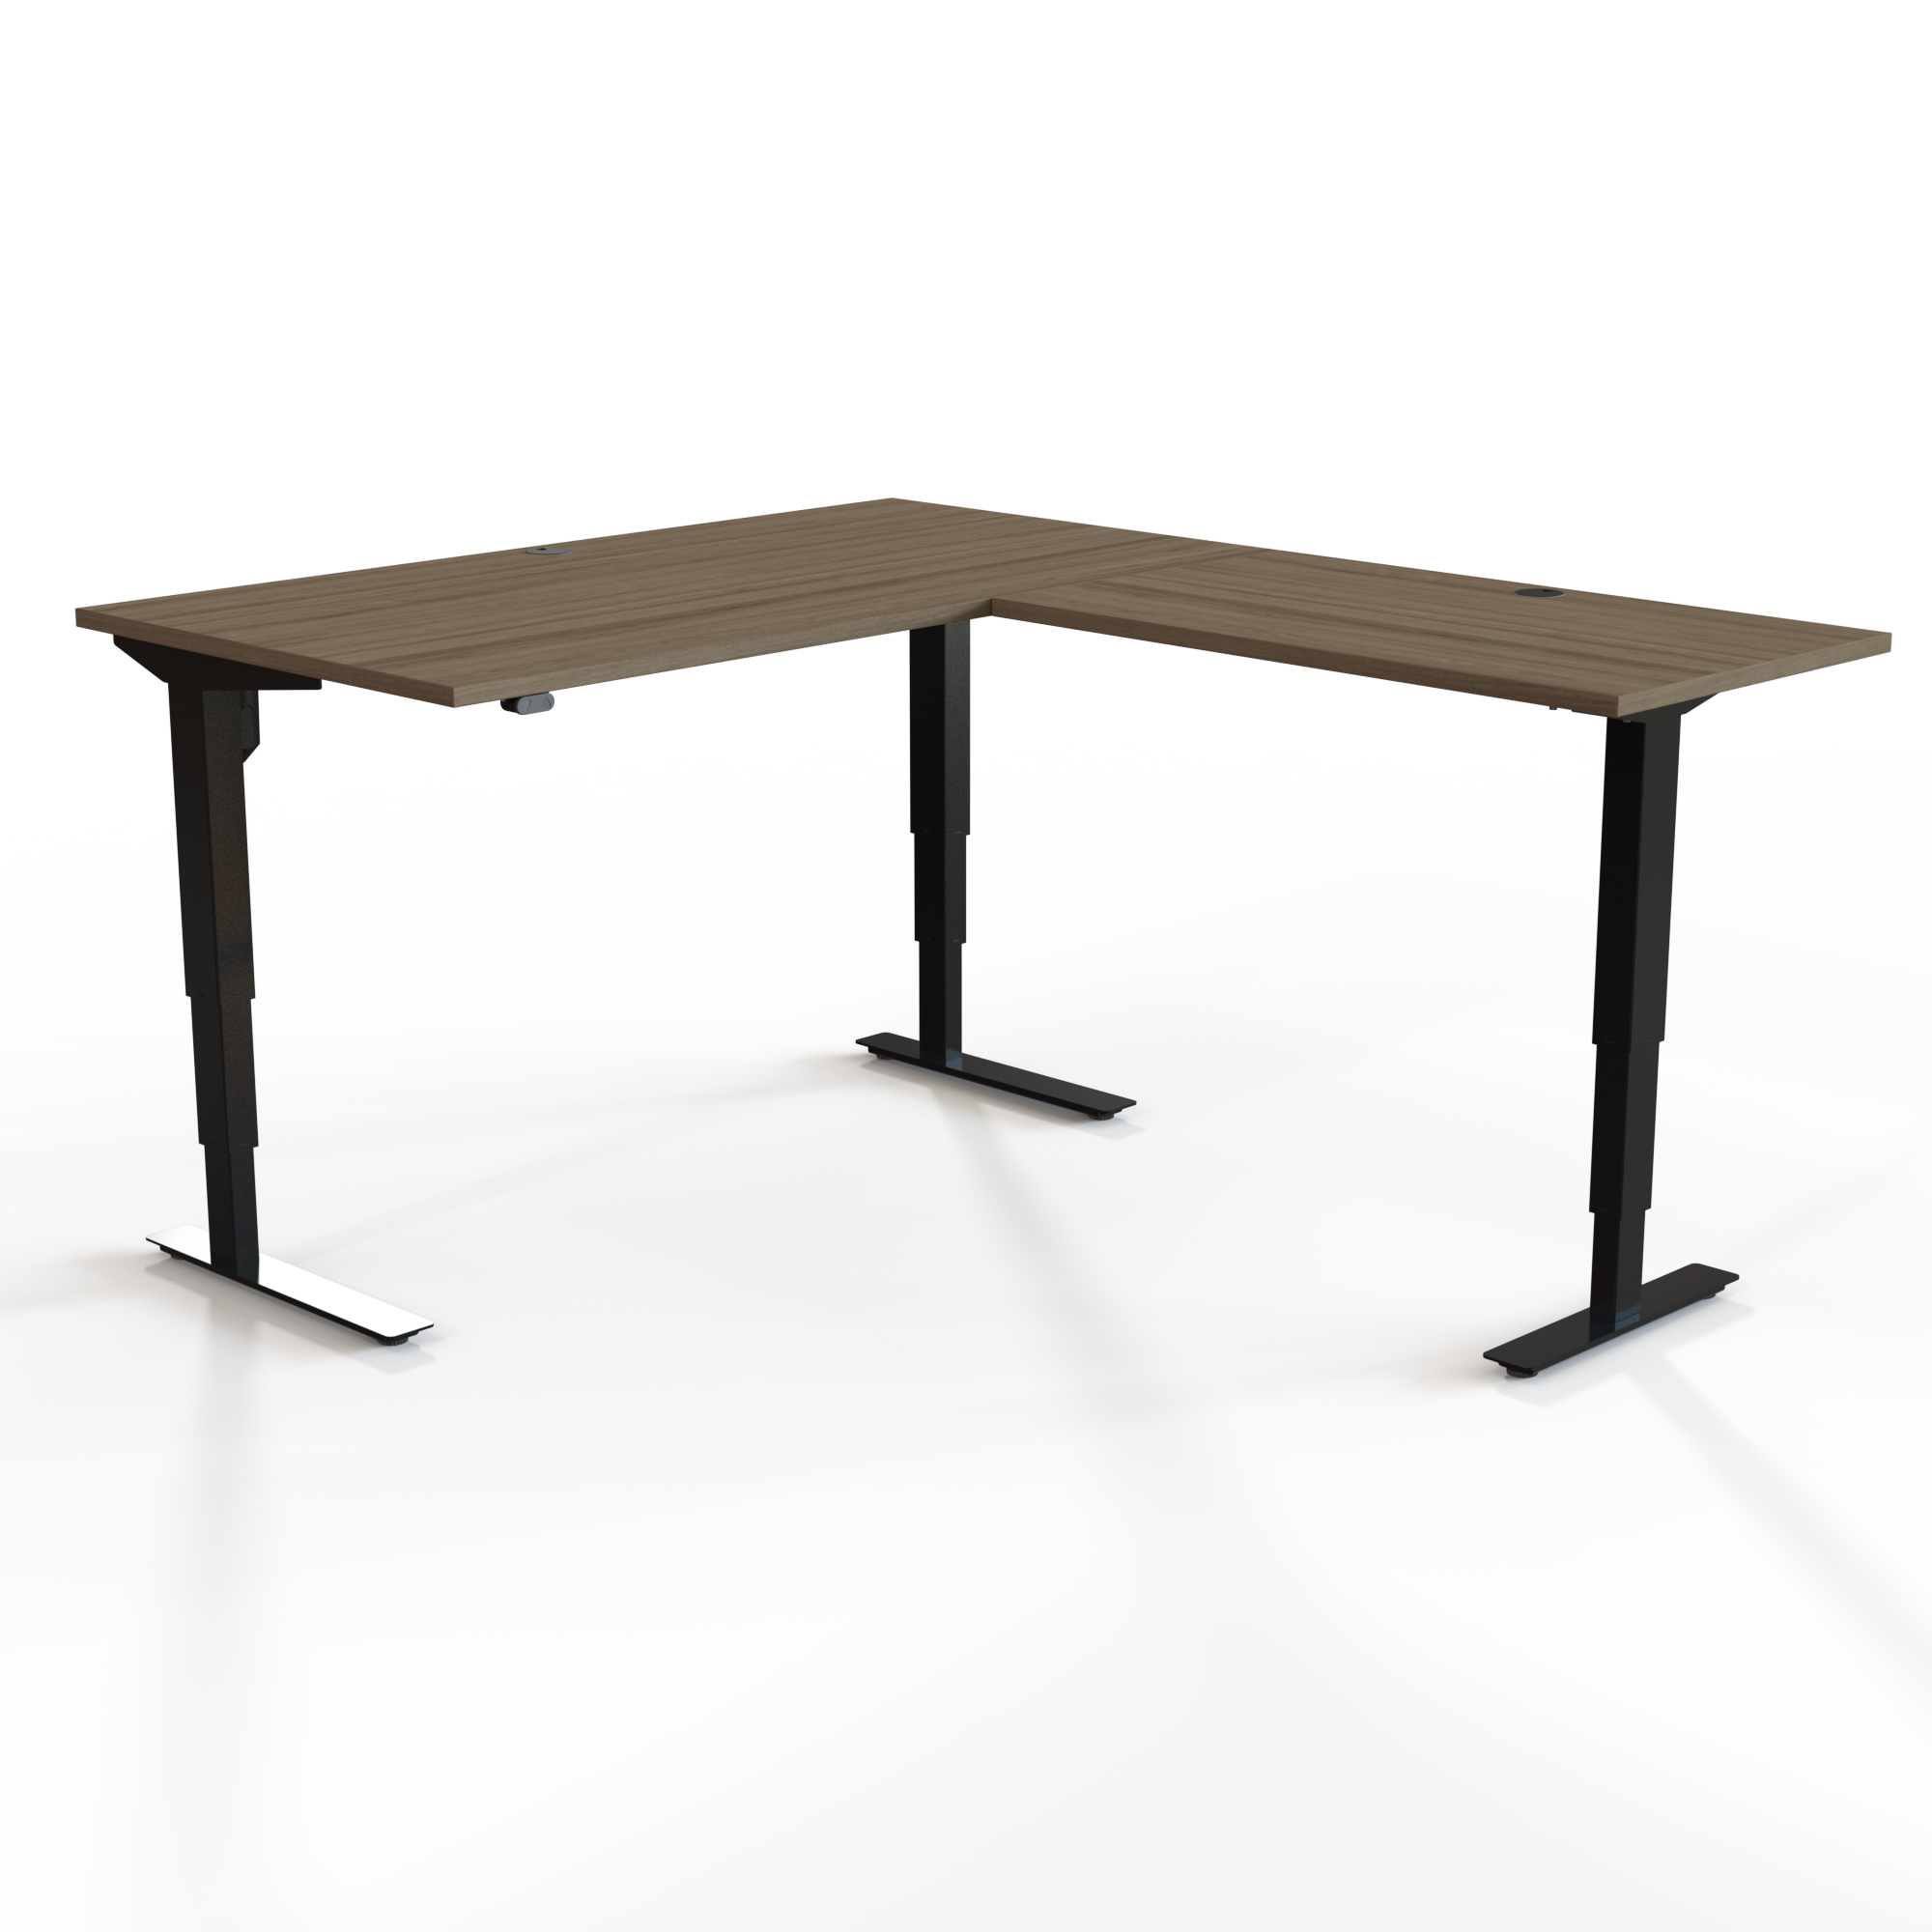 Electric Adjustable Desk | 150x80 cm | Walnut with black frame